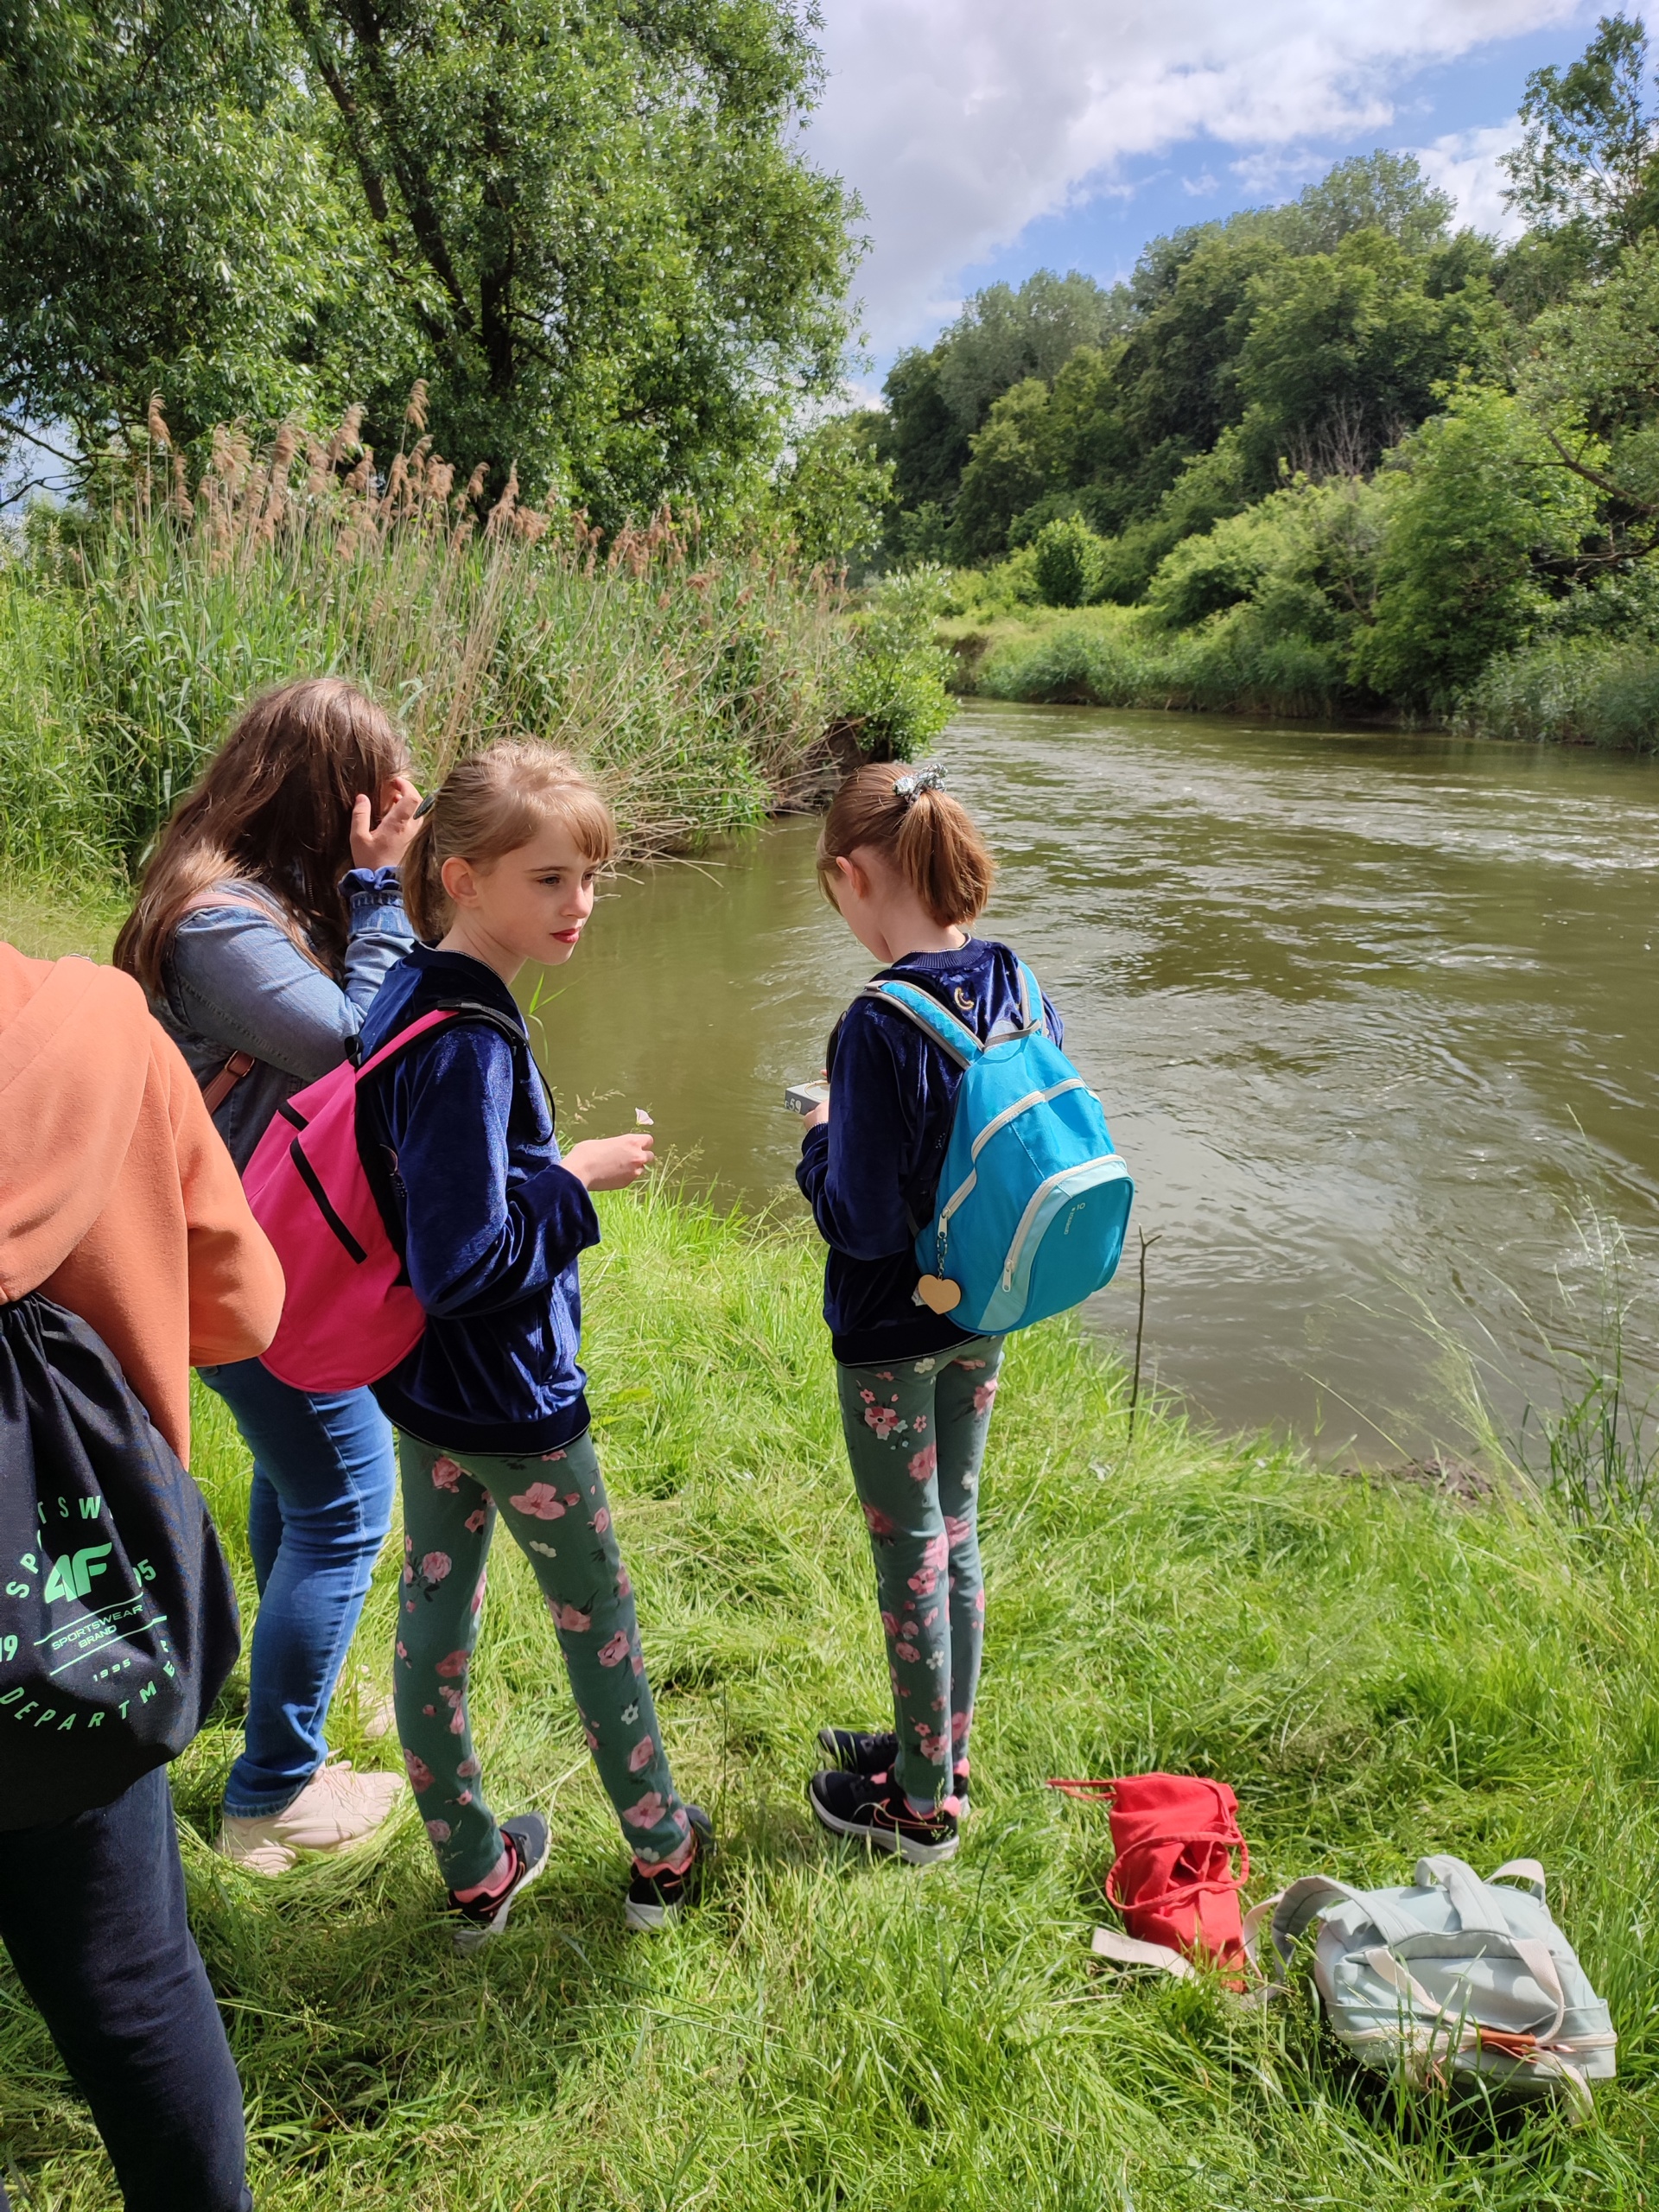 Czterech uczniów w różnokolorowych strojach z plecakami stoi nad brzegiem rzeki.W oddali widać zielone drzewa, krzewy, w pobliżu rzeki zielona trawę i sitowie.